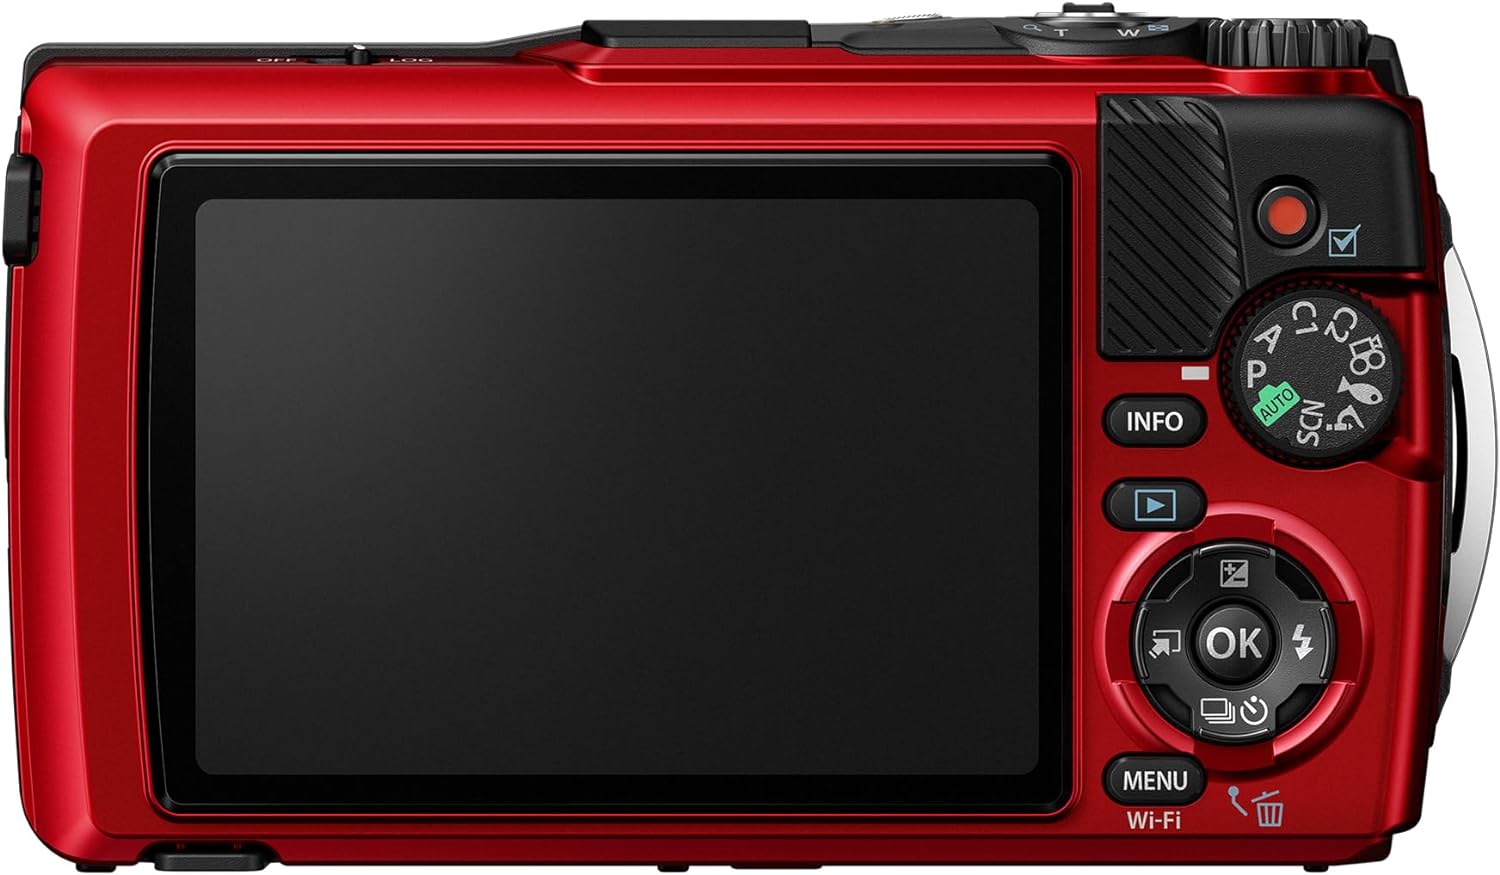 OLYMPUS TG-7 Red מצלמת אולימפוס TG-7 בצבע אדום